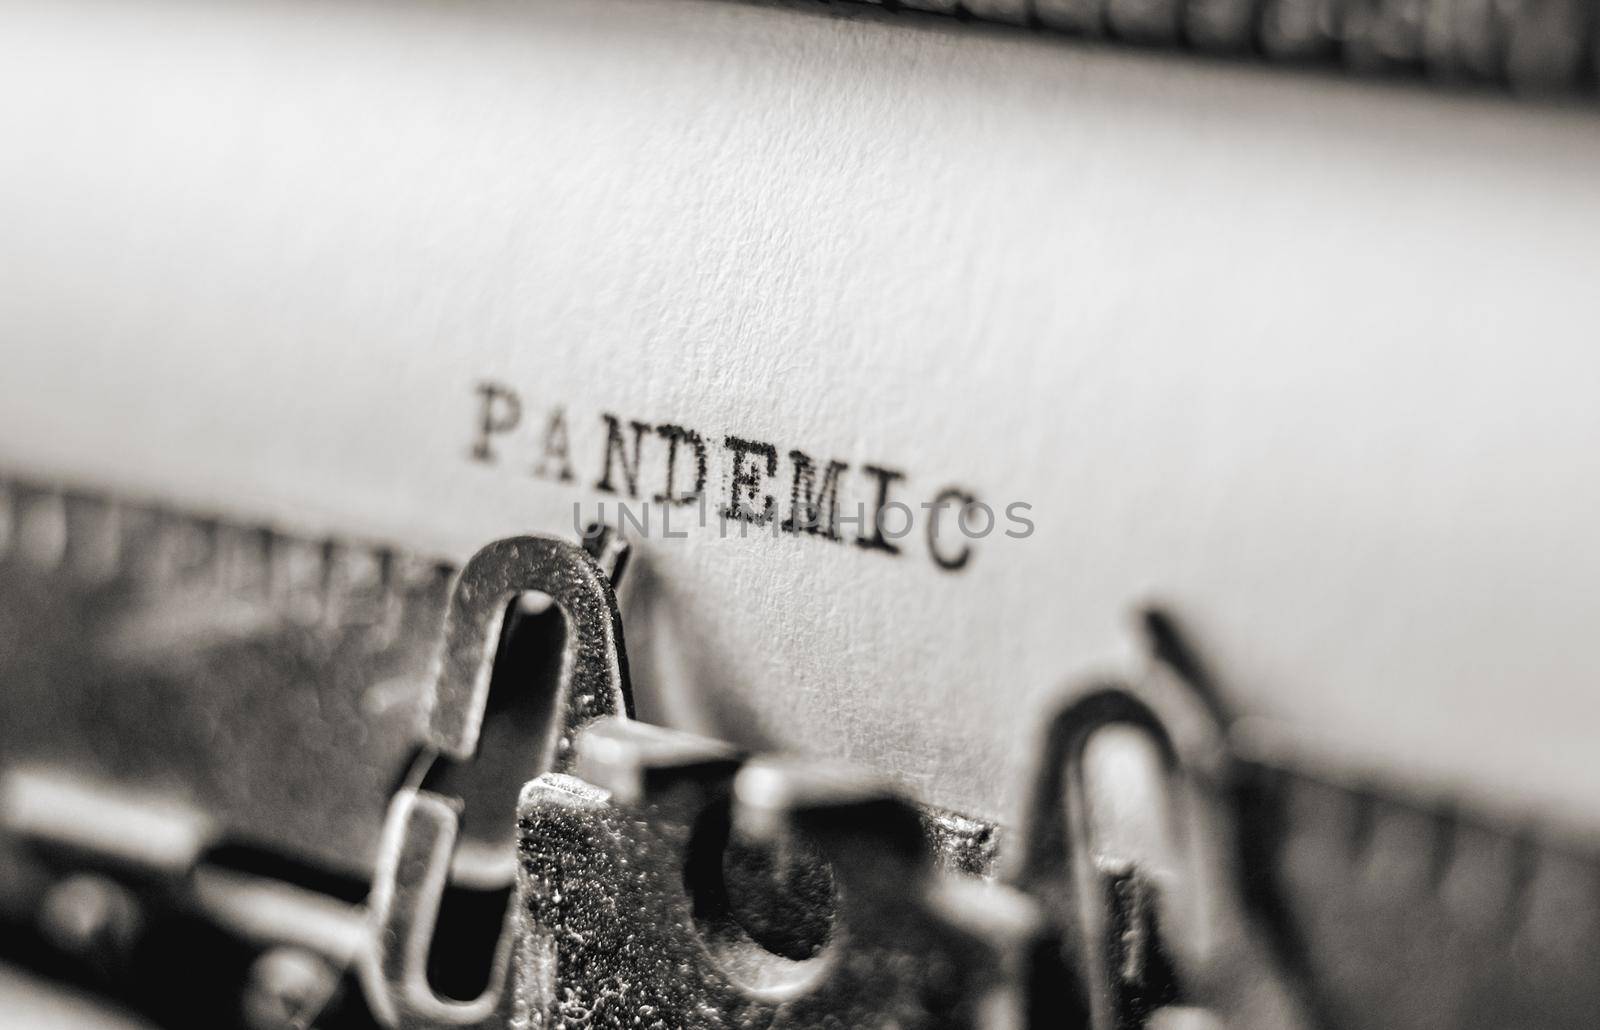 Text Pandemic on retro typewriter by tan4ikk1